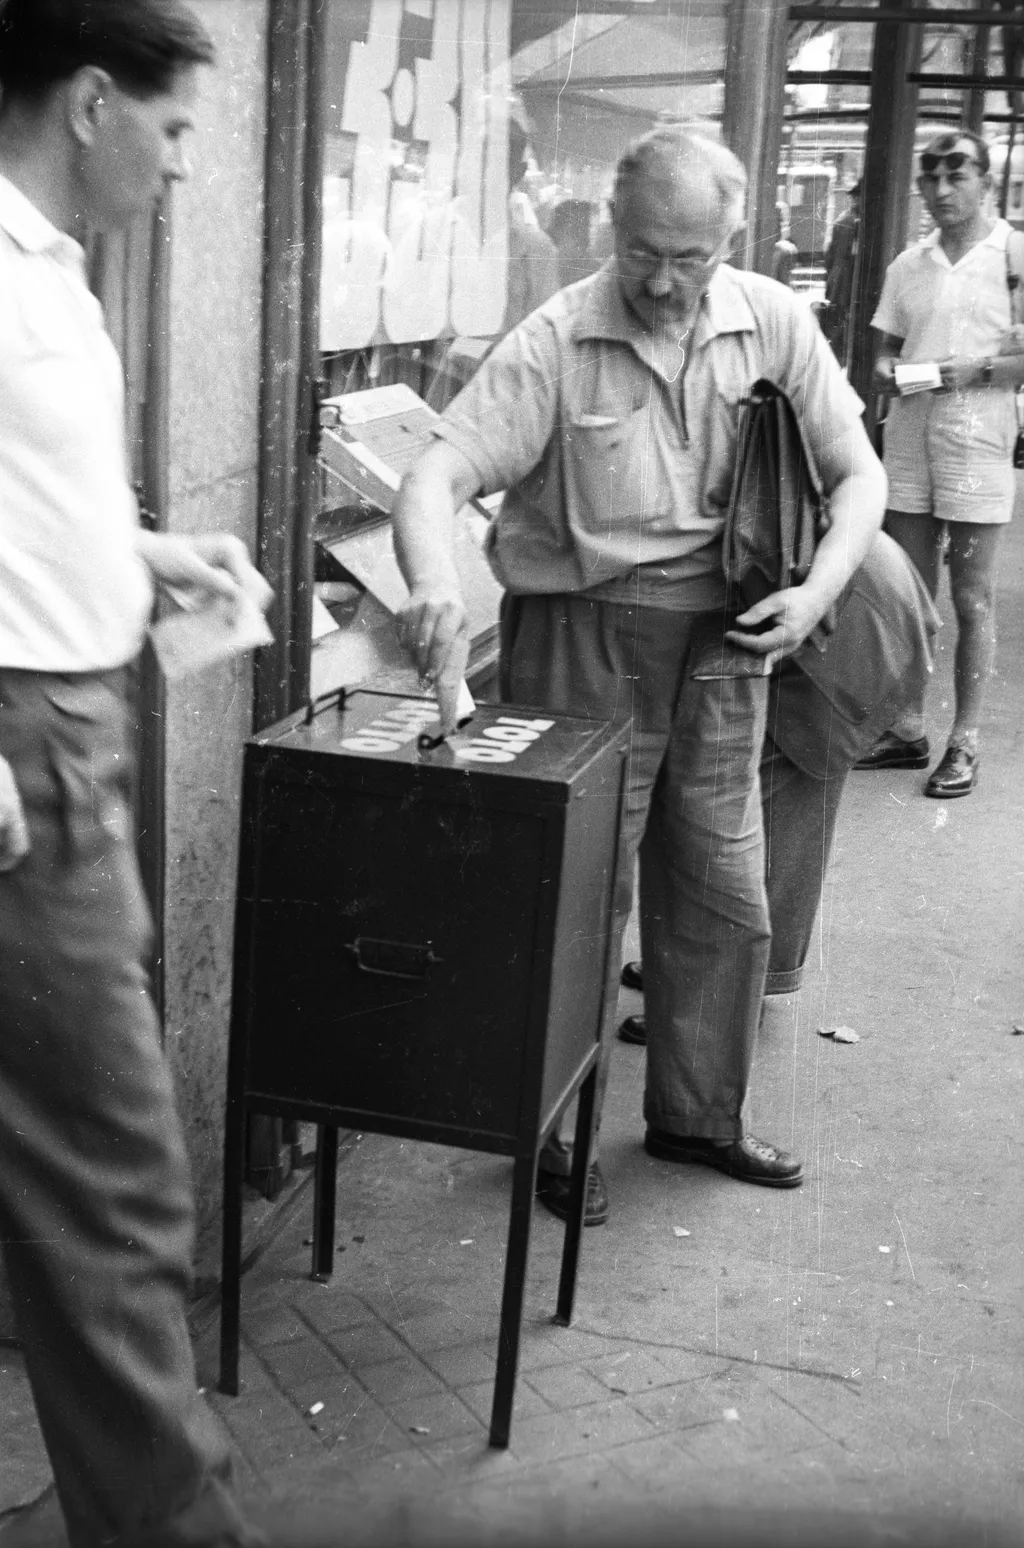 65 éve bevezették a lottót galér Magyarország,
Budapest VII.
Károly (Tanács) körút 1., totózó.
ÉV
1957 